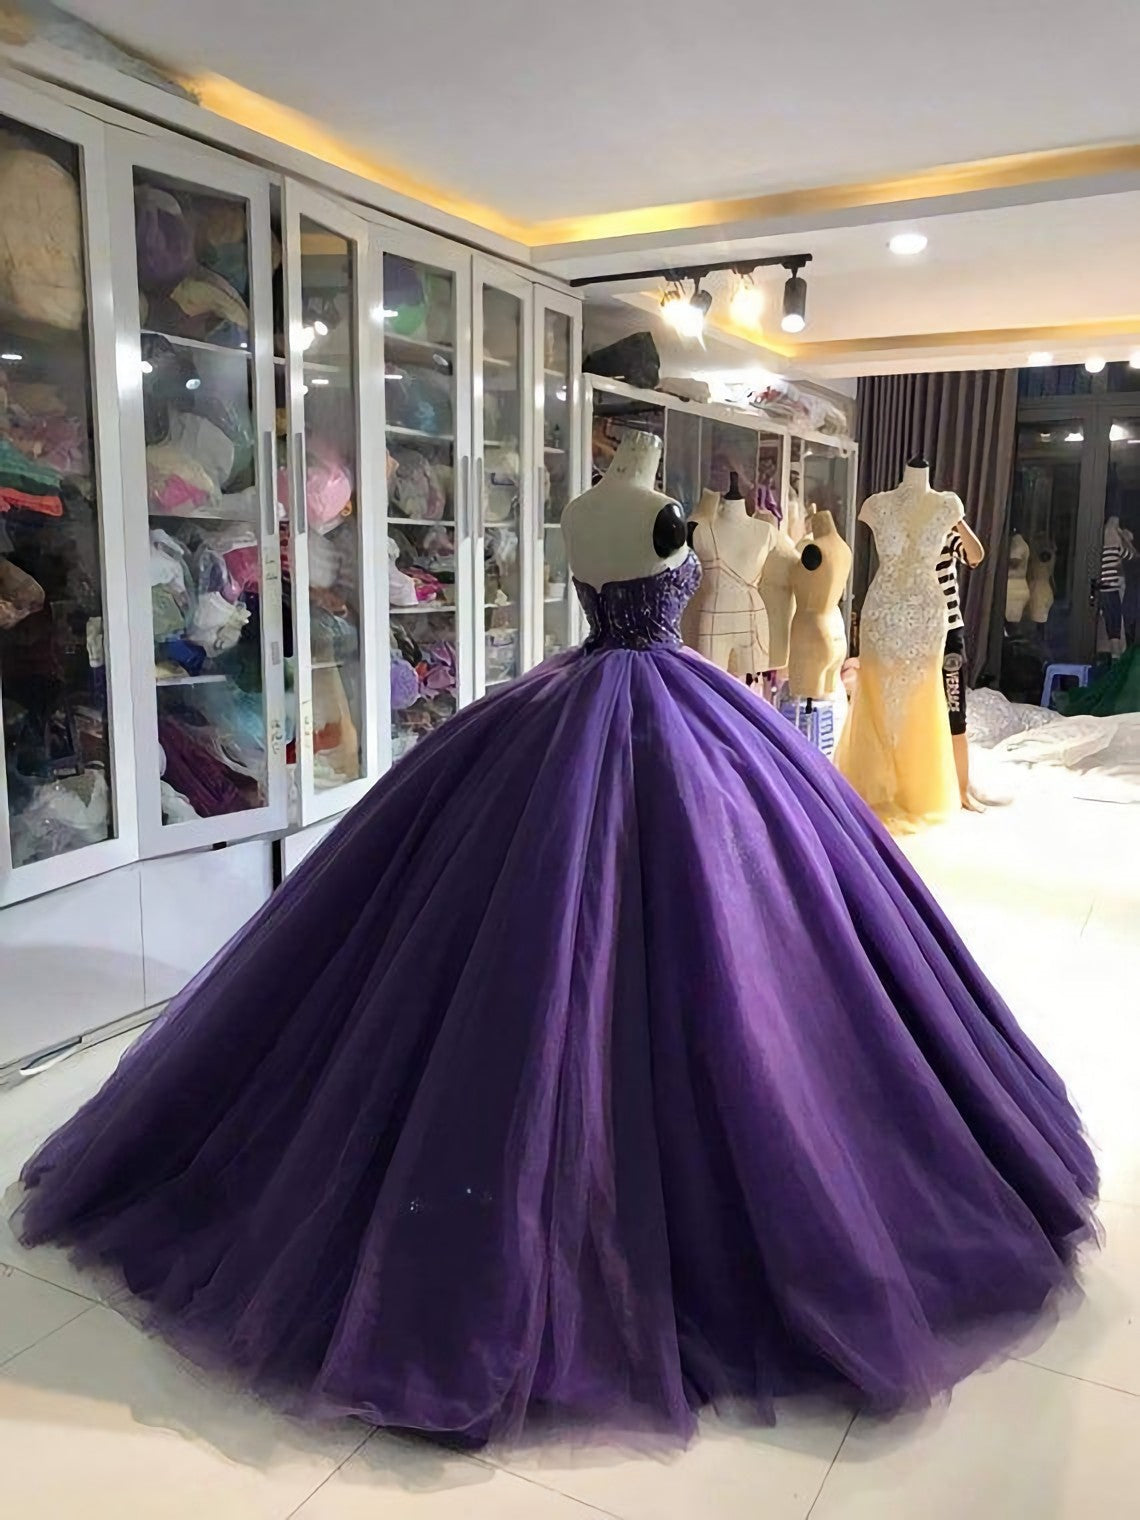 Prom Dress Ideas Black Girl, Purple Dress, Ball Gown Prom Dress, Strapless Ball Gown